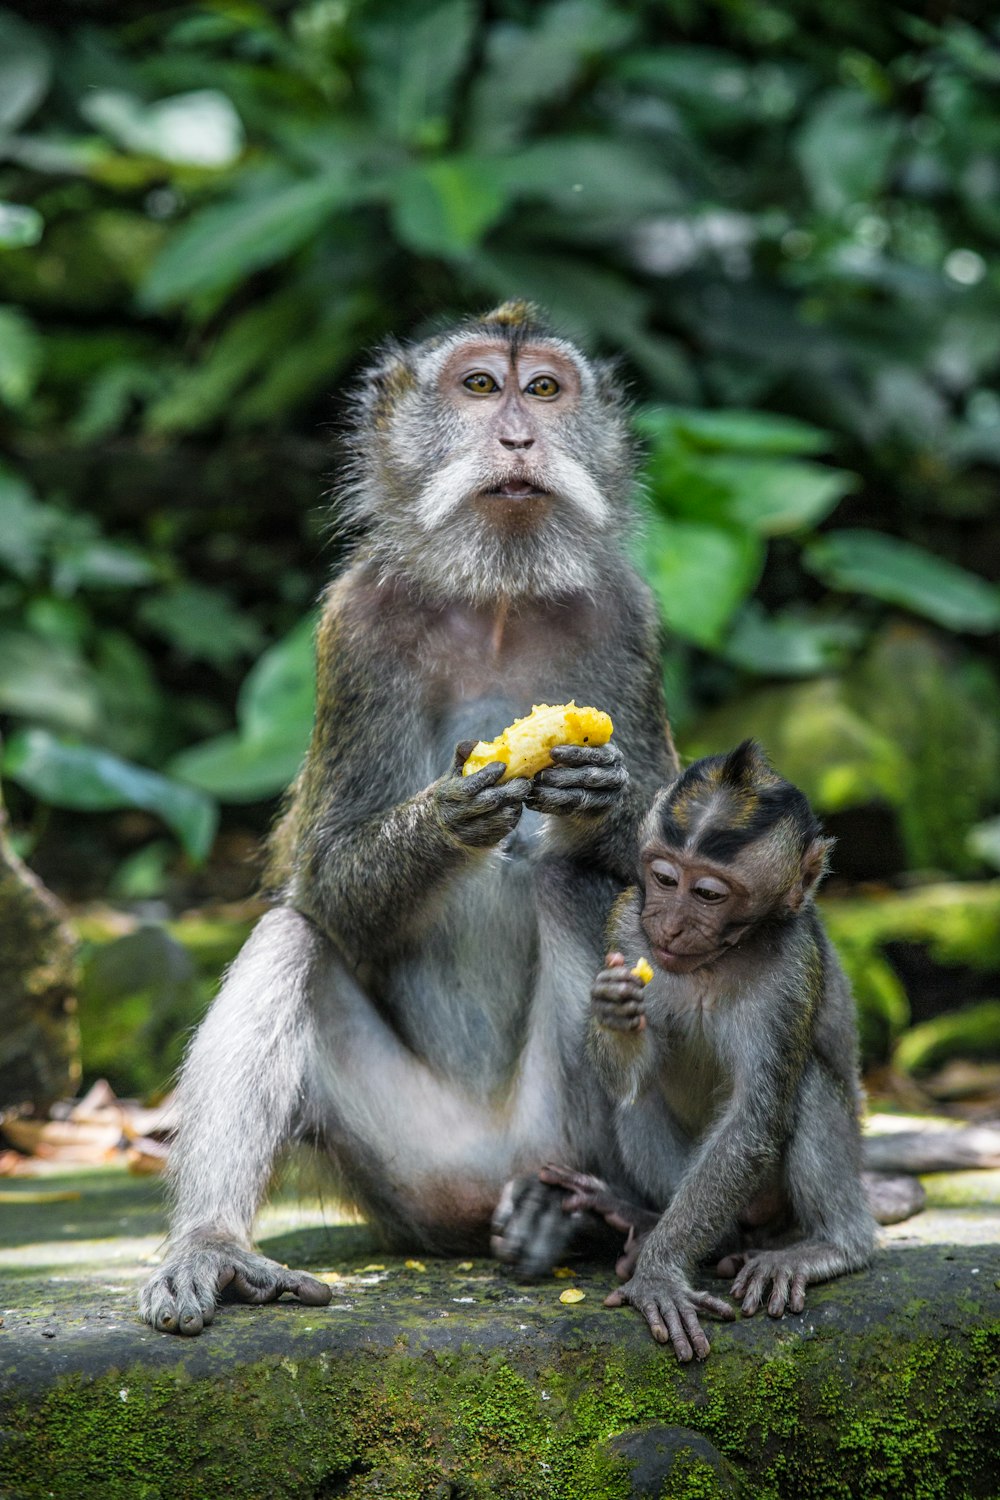 brown monkey eating banana during daytime